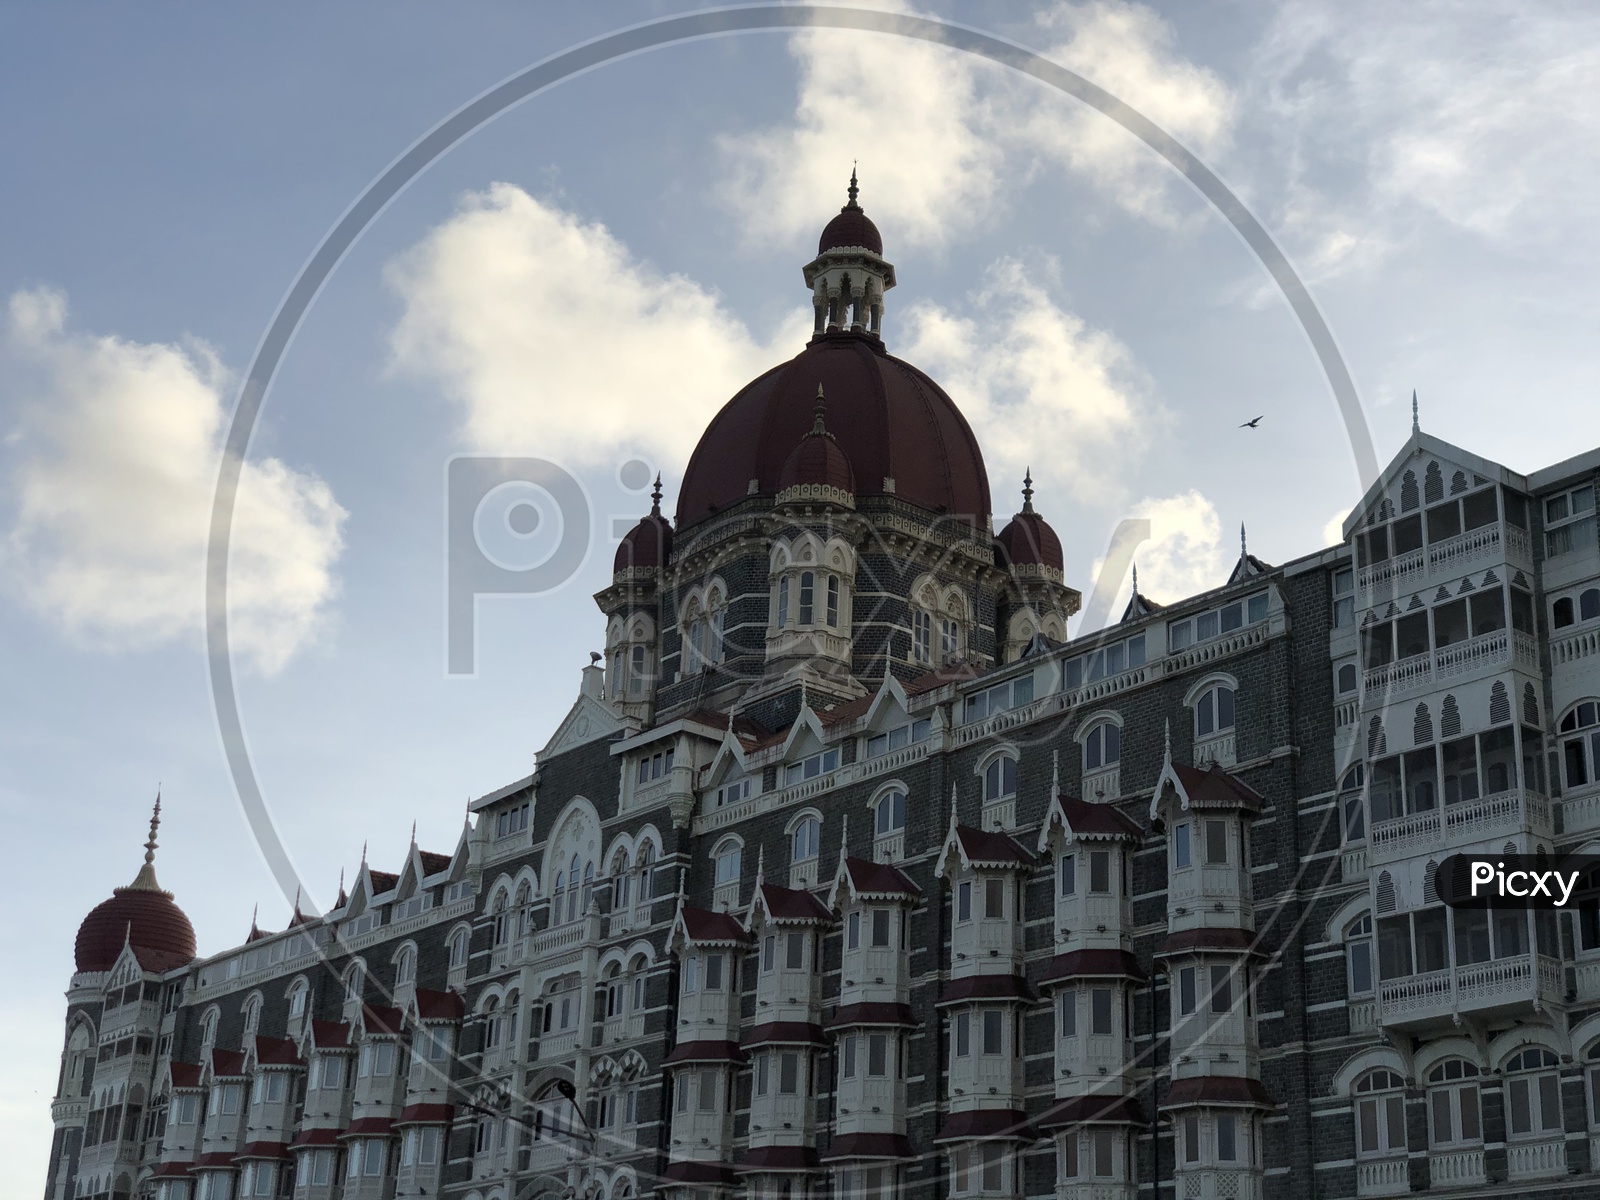 The Taj Mahal Palace Hotel in Mumbai